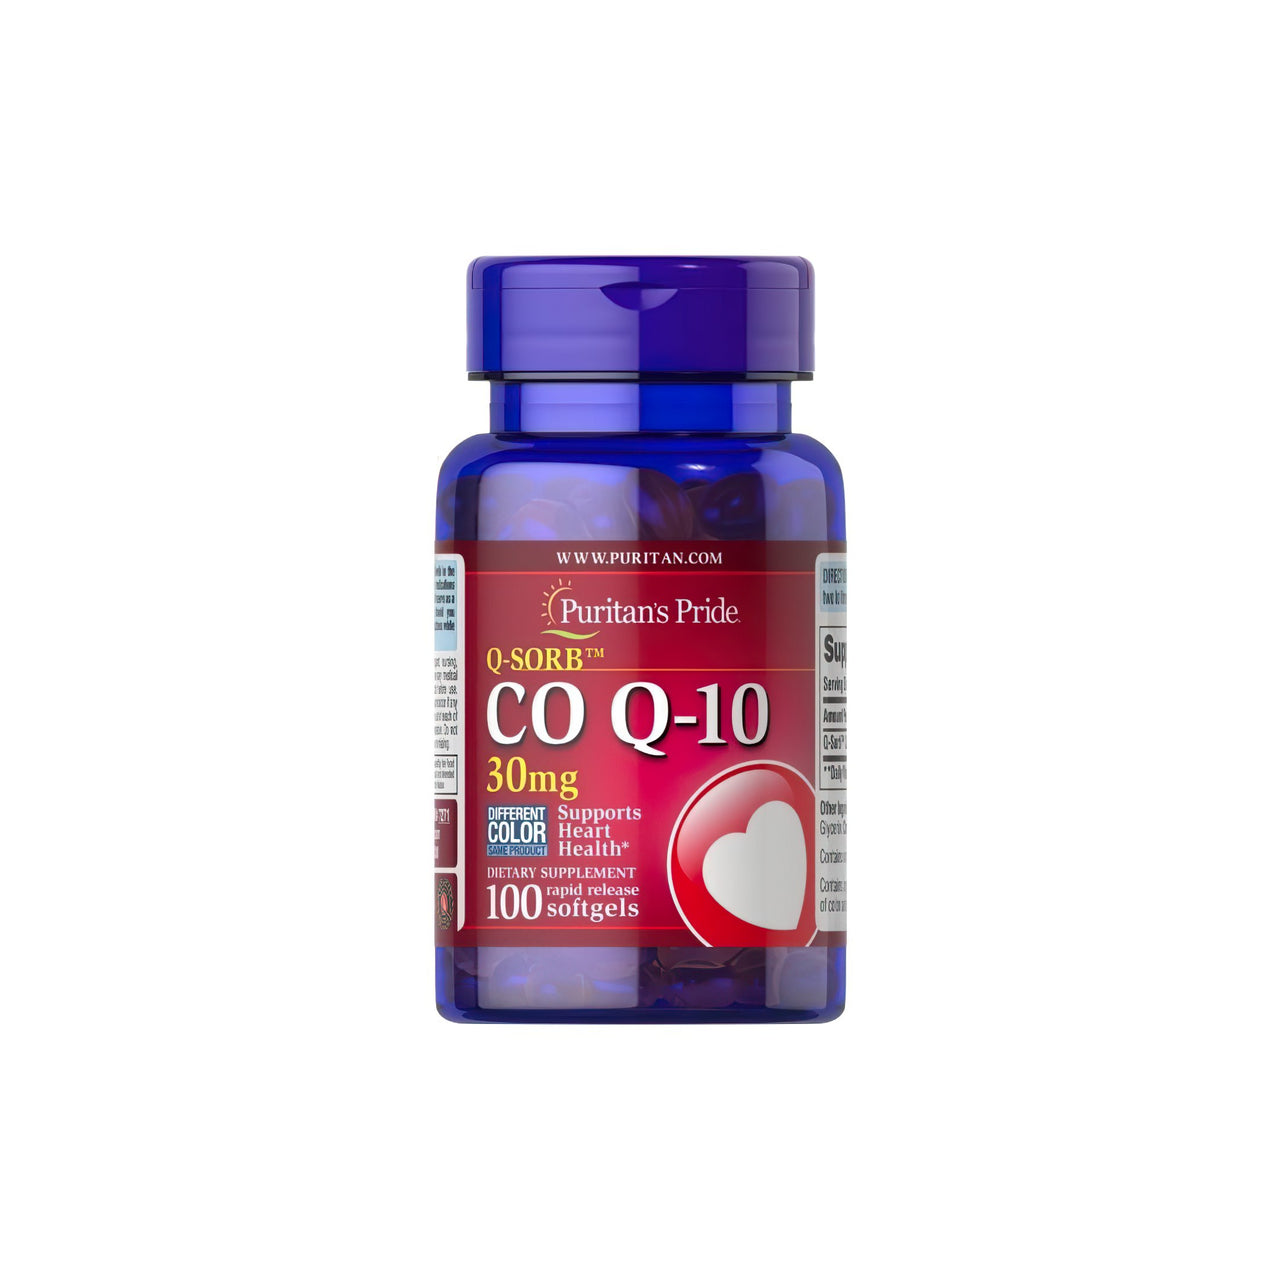 Un flacone di Puritan's Pride Q-SORB™ Co Q-10 30 mg 100 softgel a rilascio rapido con un cuore, noto per aumentare la resistenza e i livelli di energia.